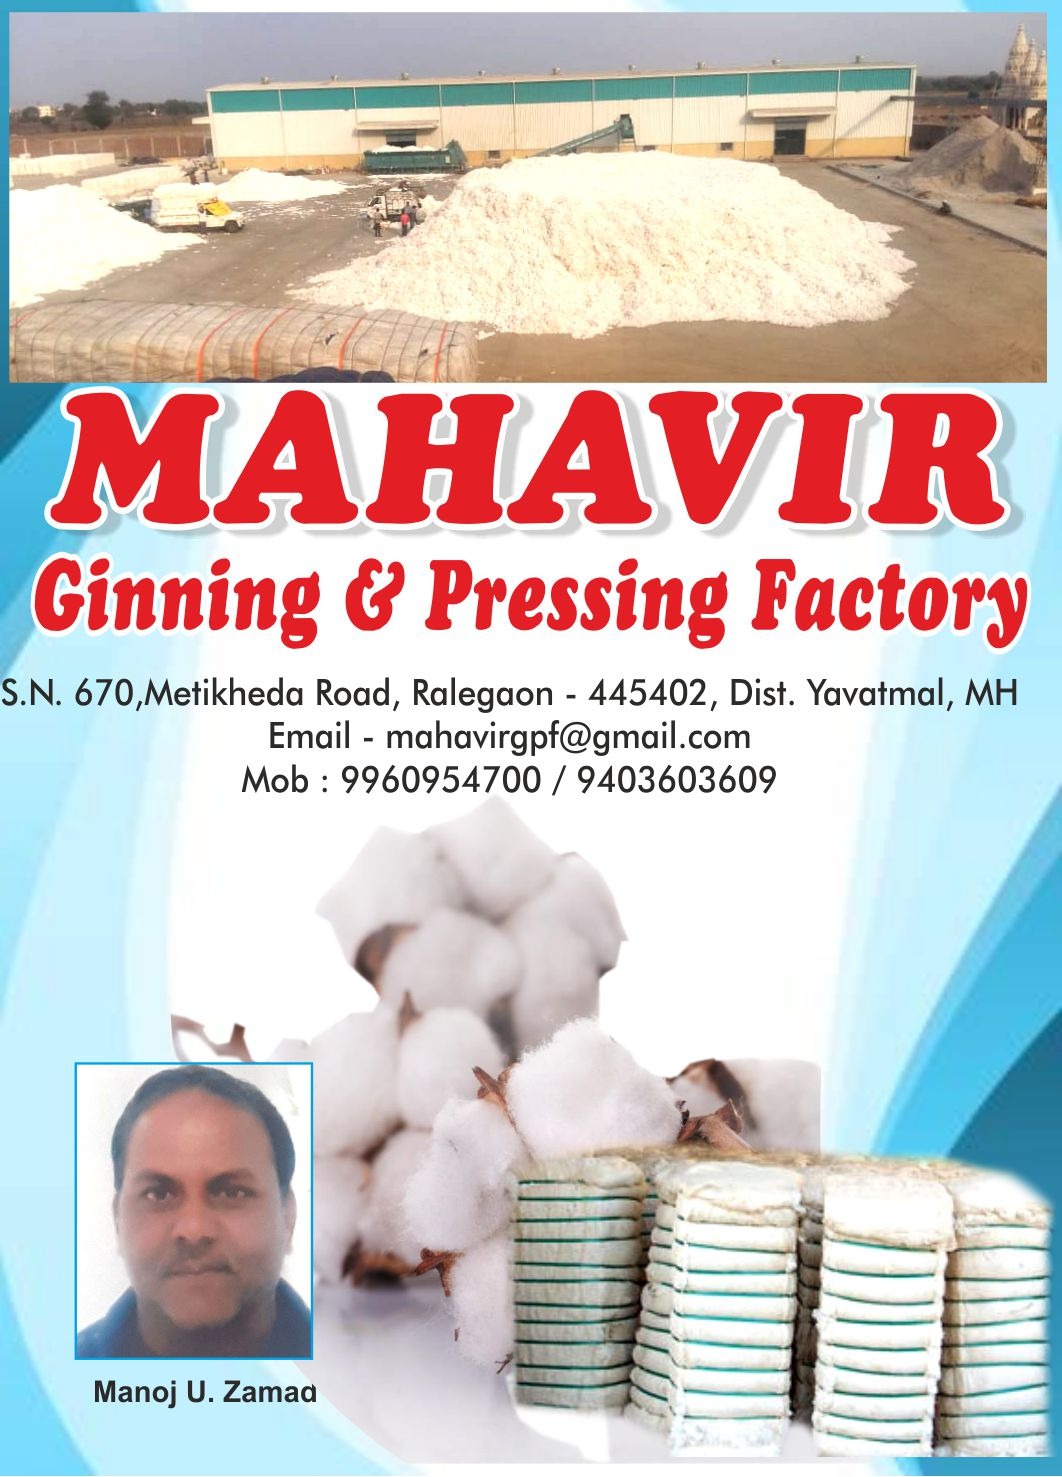 Mahavir Ginning and Pressing Factory